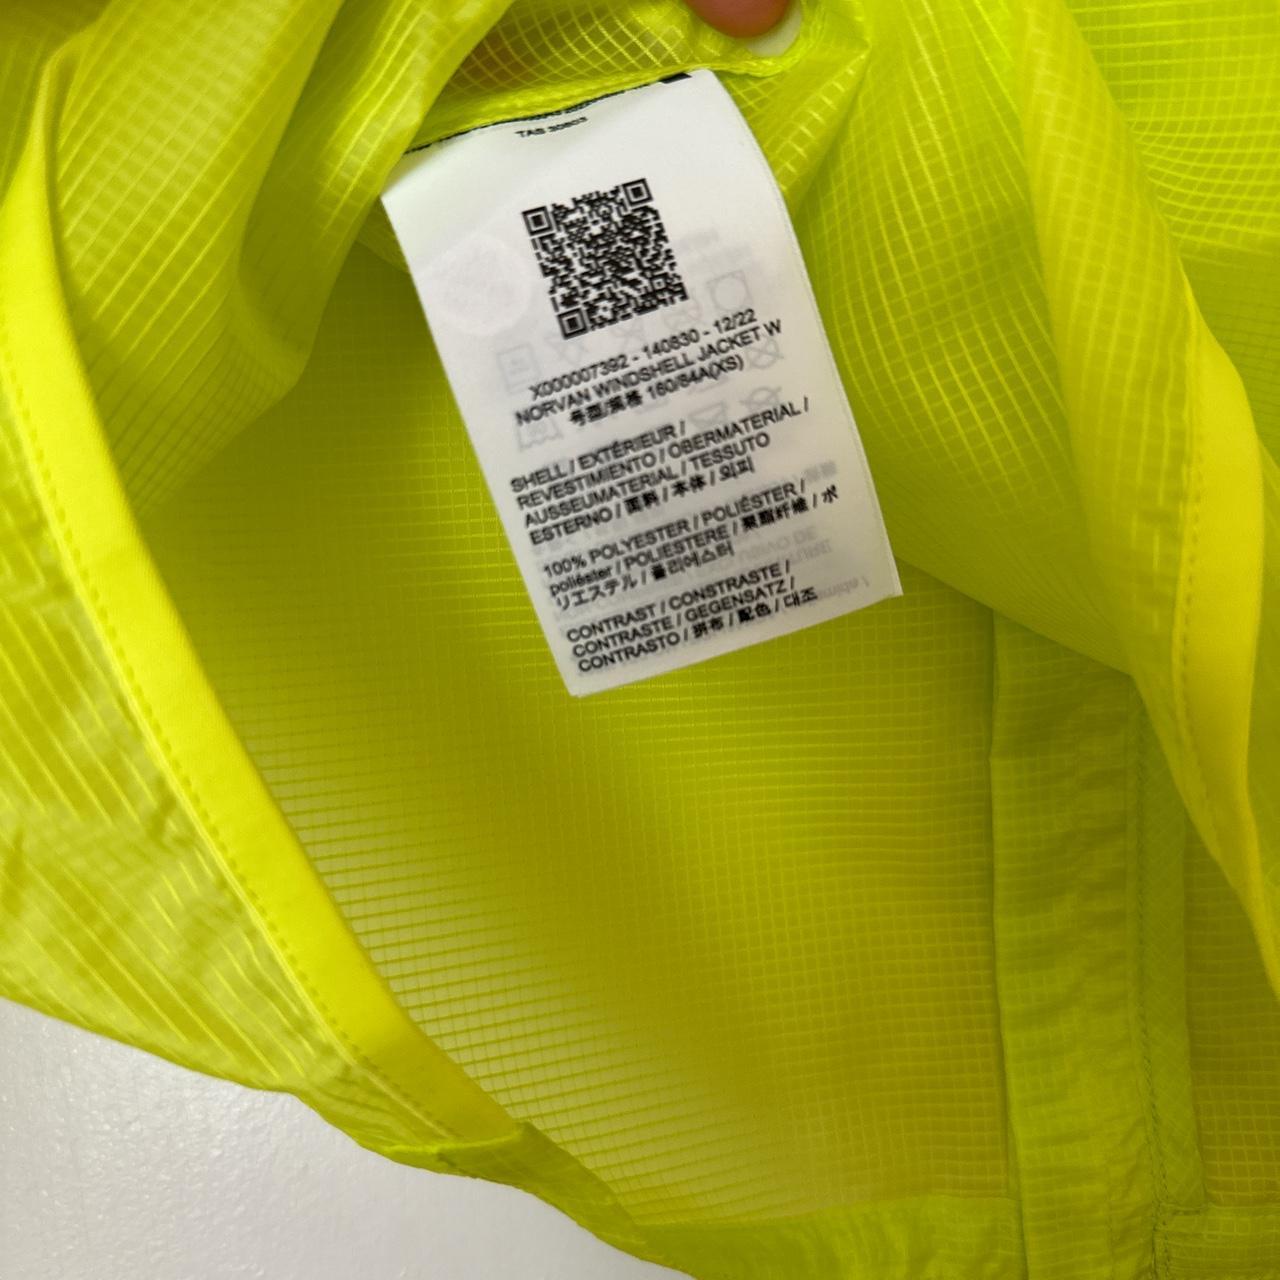 ARC'TERYX Norvan windshell jacket Size XS Brand new... - Depop